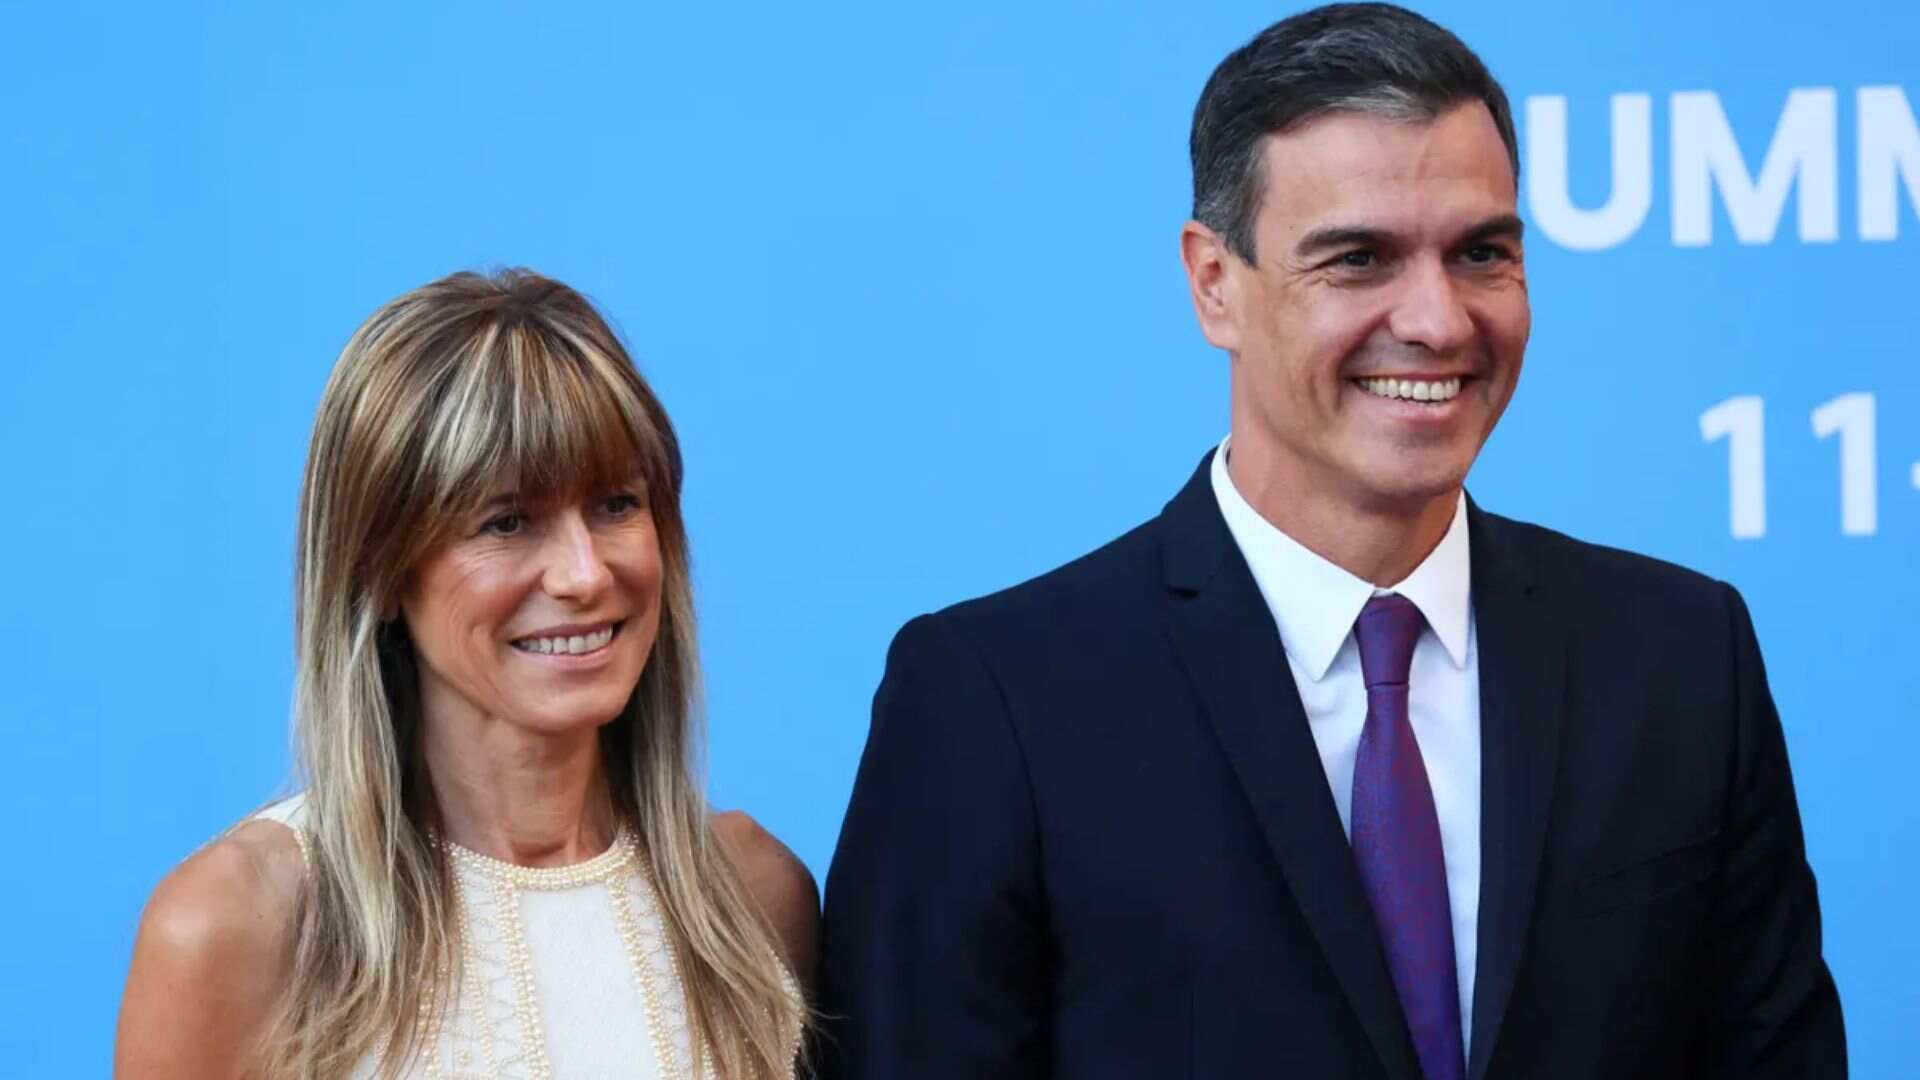 Spanish PM Pedro Sanchez To Testify In Corruption Case Involving Wife